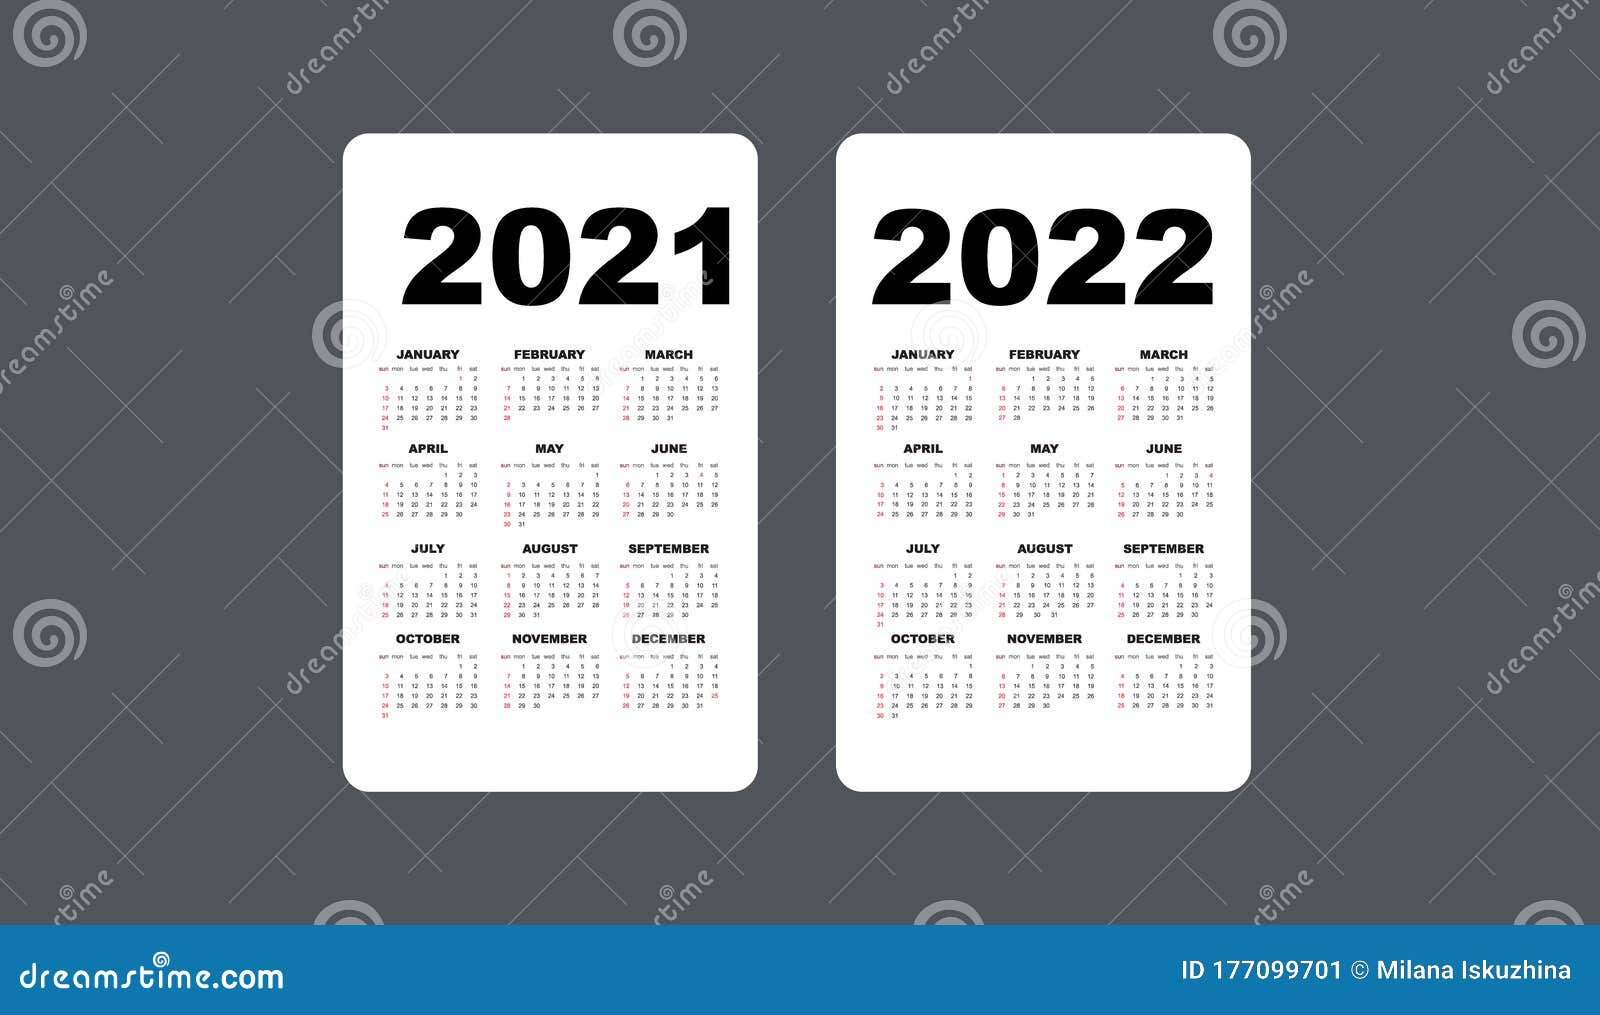 Calendar 2021 And 2022 Template. Calendar Design In Black